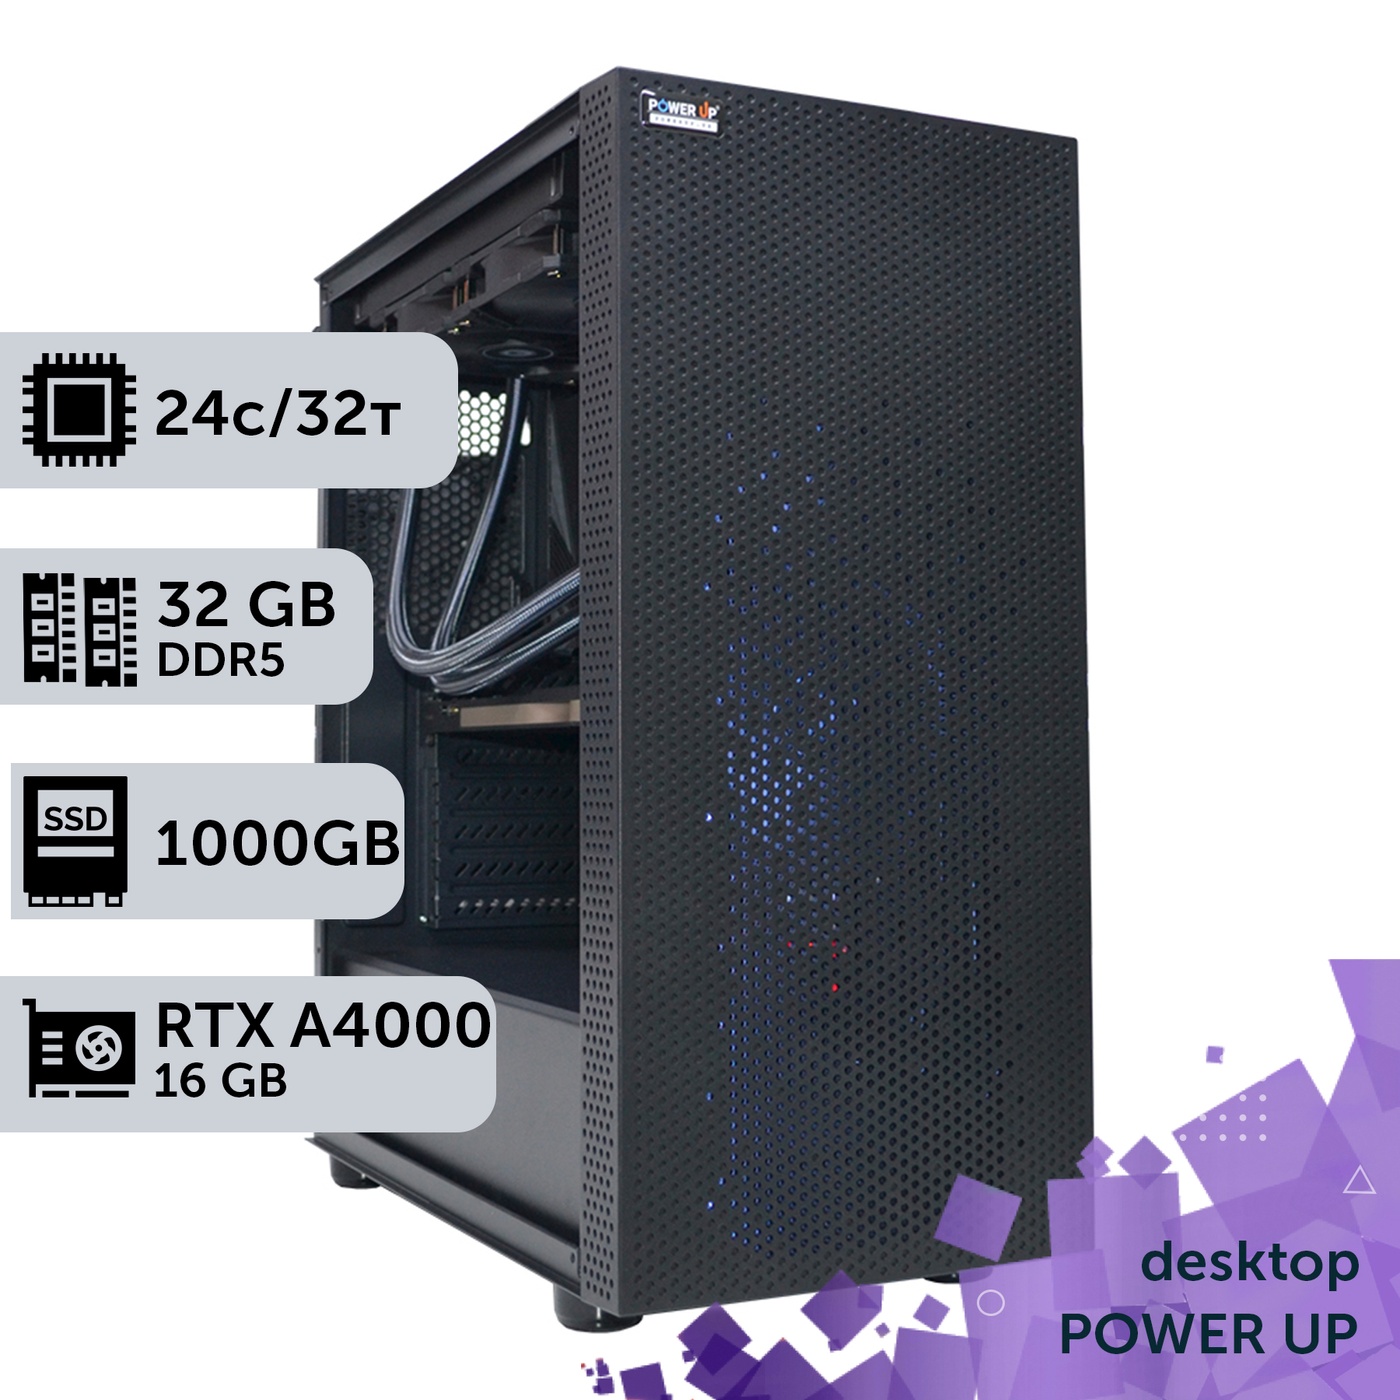 Рабочая станция PowerUp Desktop #243 Core i9 13900K/32 GB/SSD 1TB/NVIDIA Quadro RTX A4000 16GB